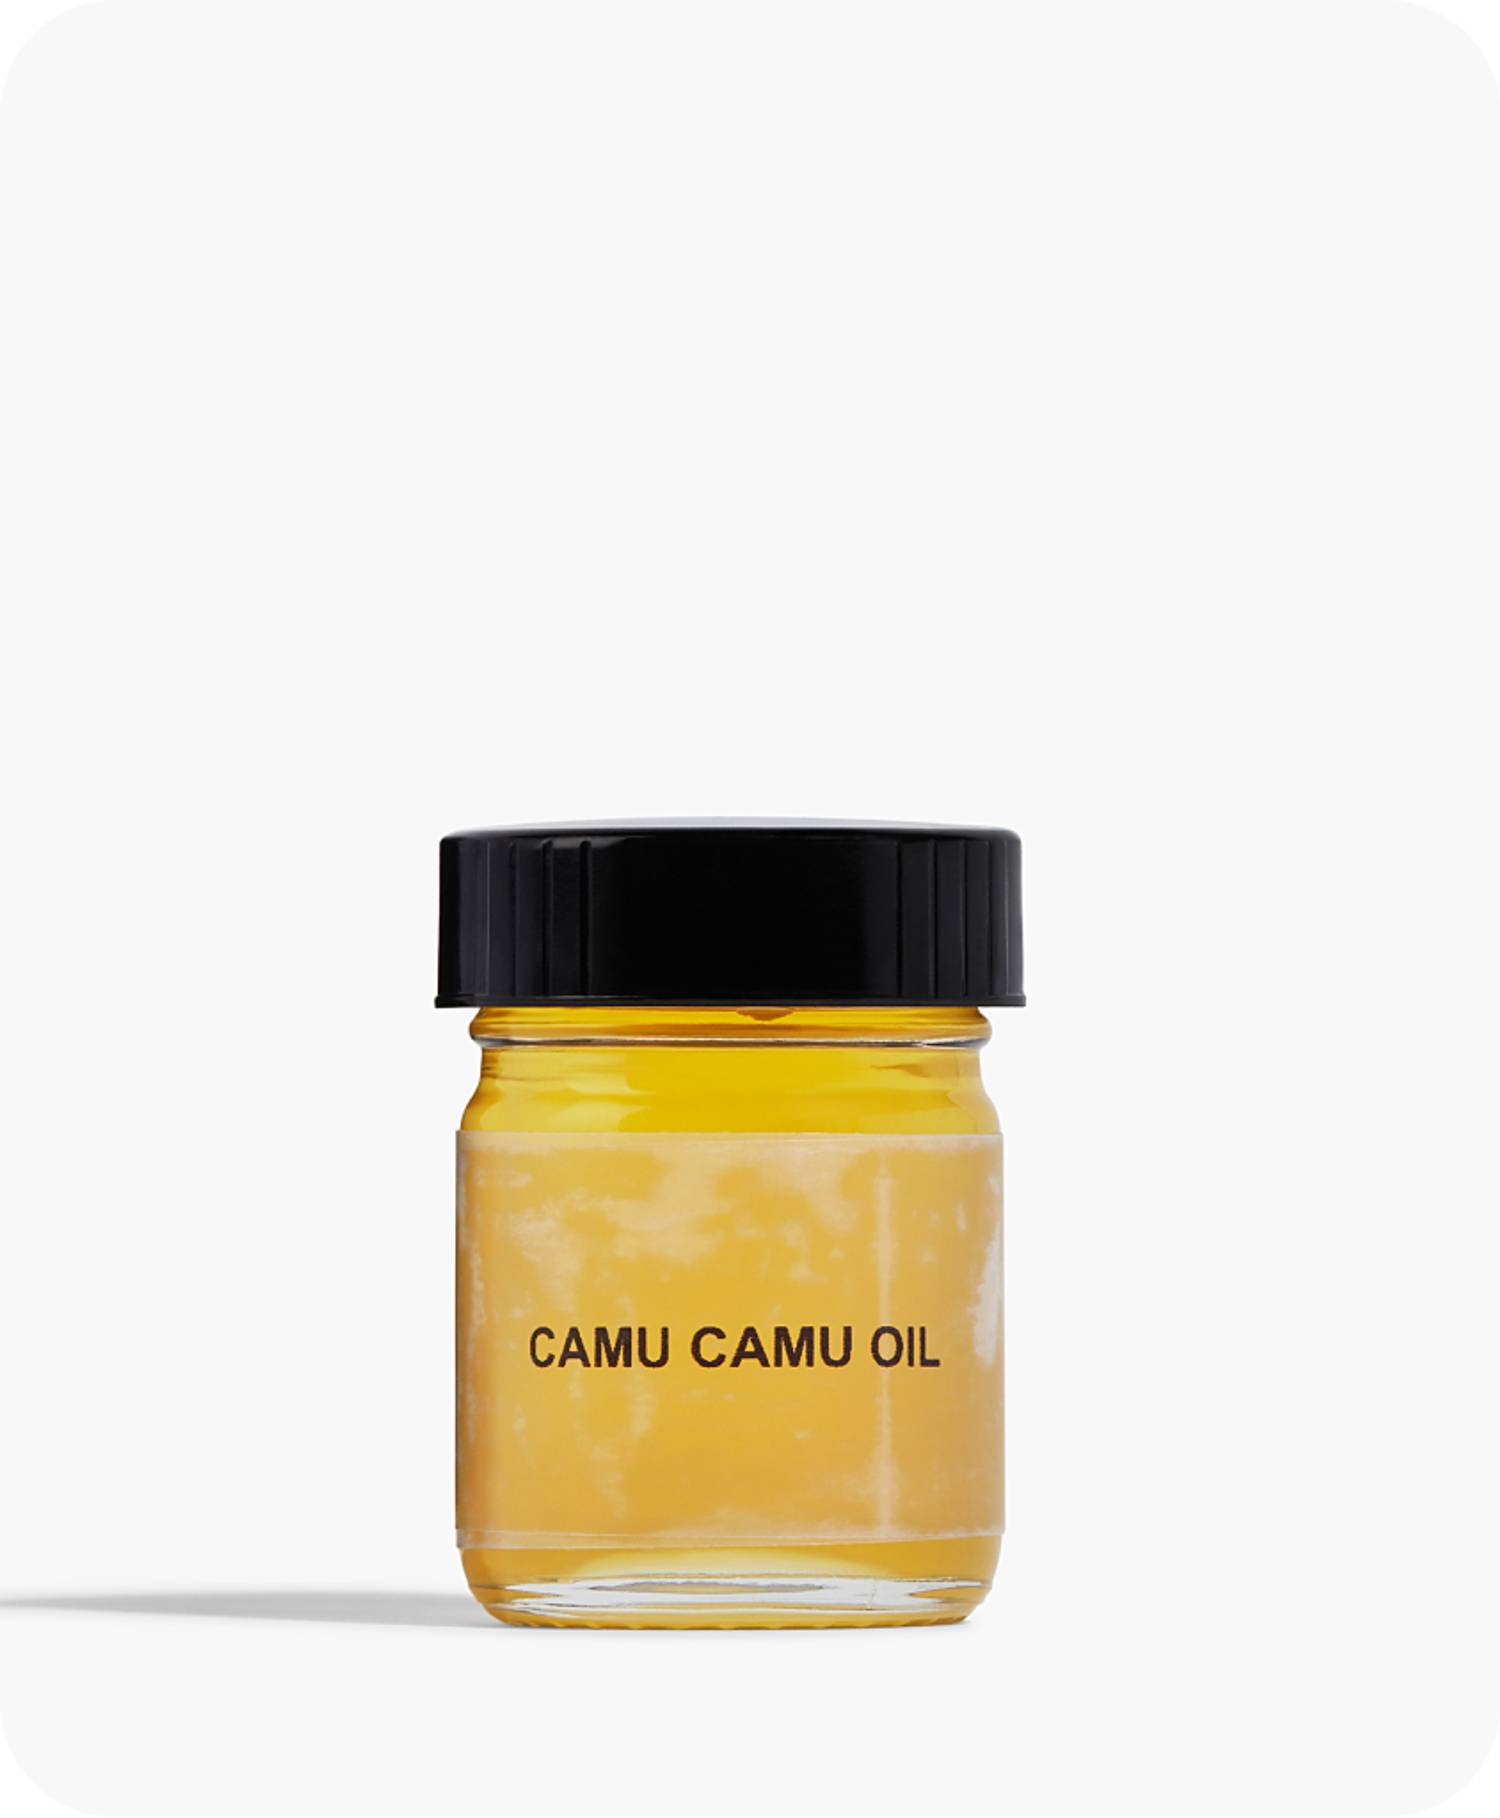 Camu Camu Oil in natural form